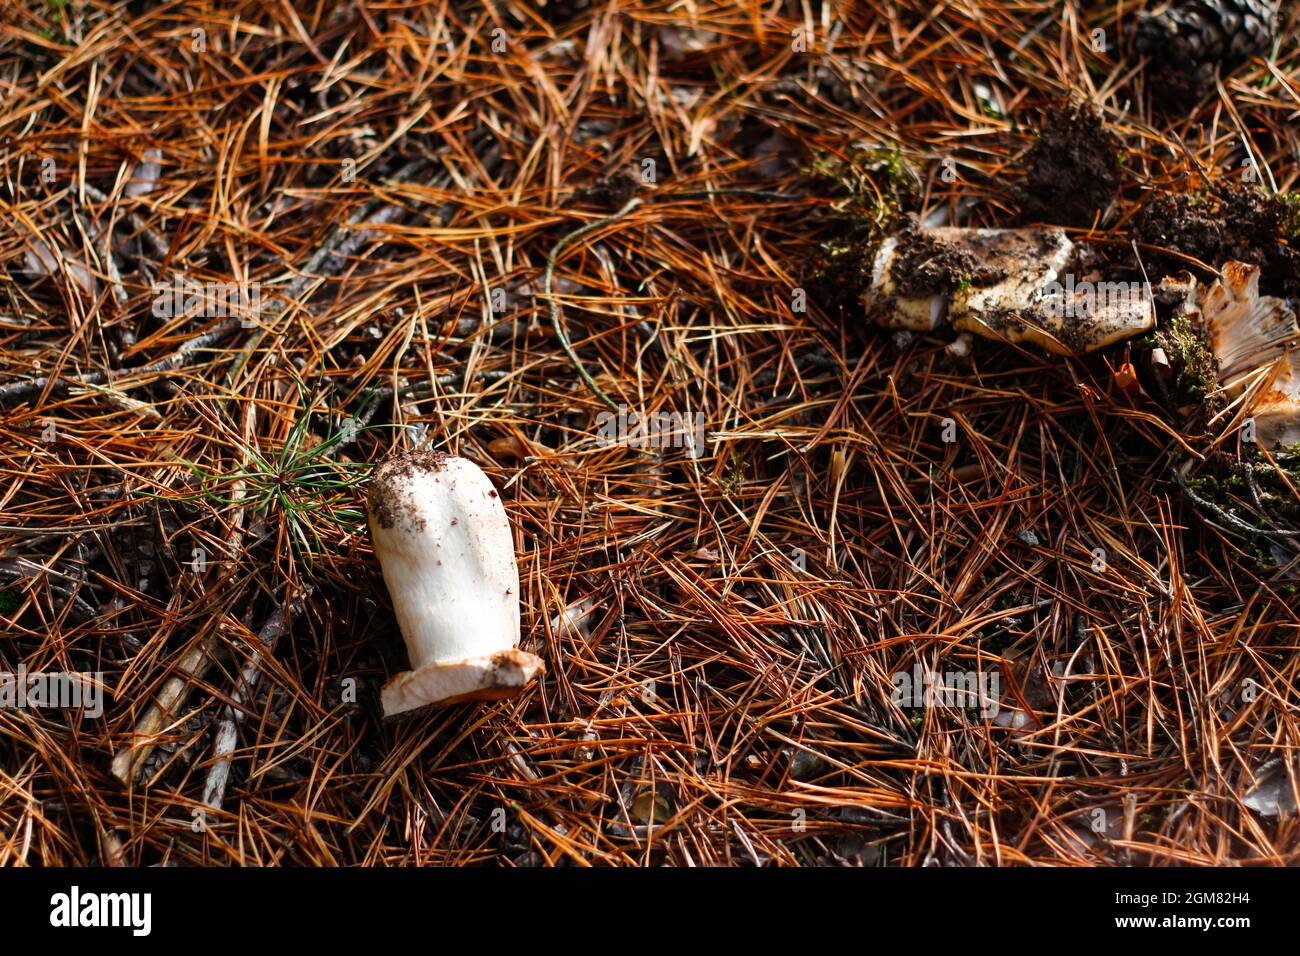 Defokussieren Sie zerbrochene Rotrussula-Pilze zwischen trockenem Gras, Blättern und Nadeln. Essbare Pilze wachsen im grünen Wald. Boletus versteckt sich im Boden. Obere V Stockfoto